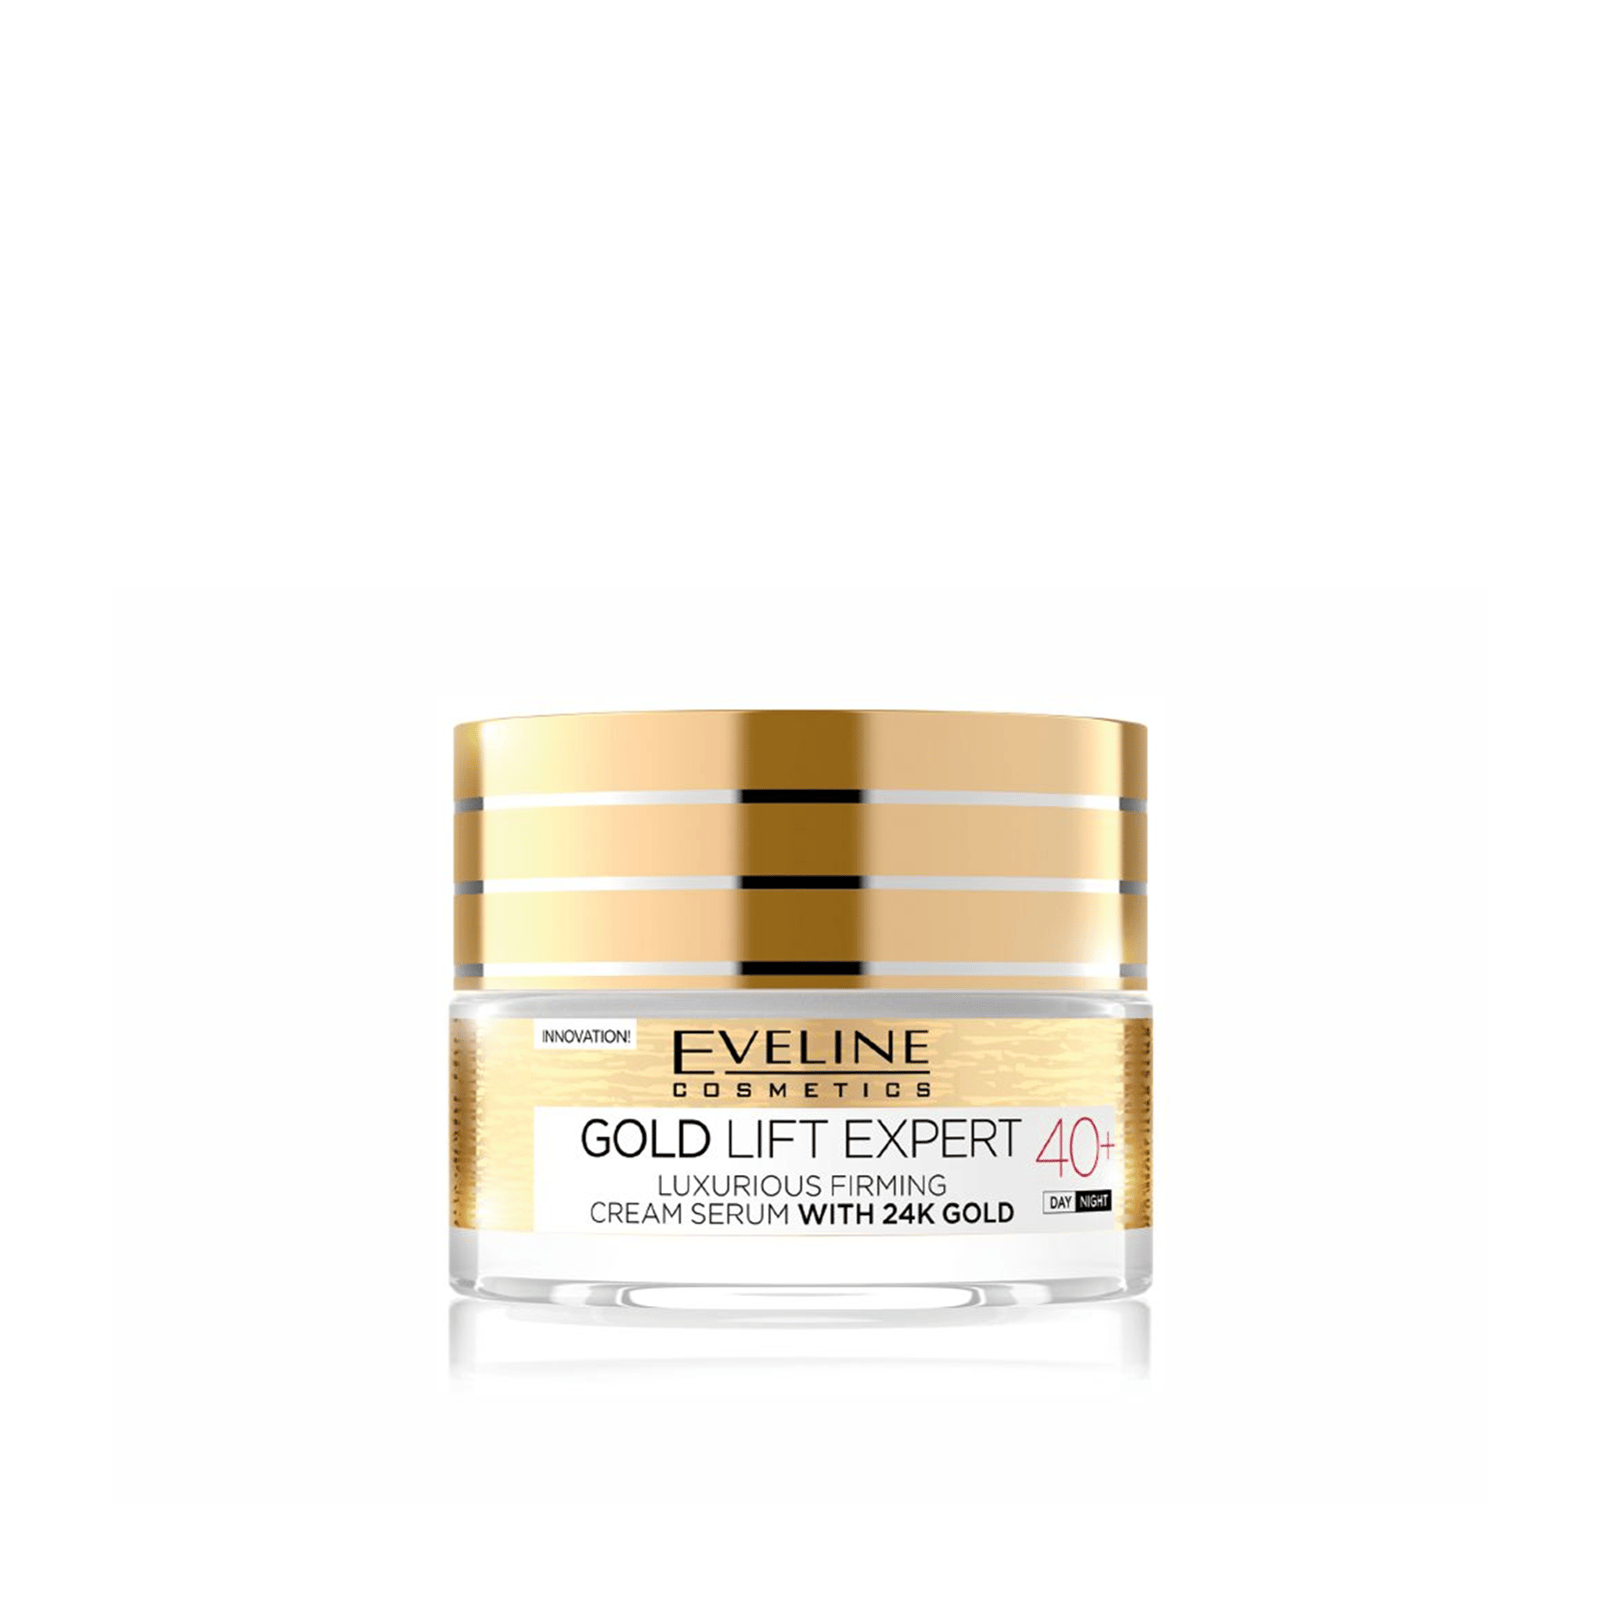 Eveline Cosmetics Gold Lift Expert 40+ Luxurious Firming Cream Serum 50ml (1.76 fl oz)